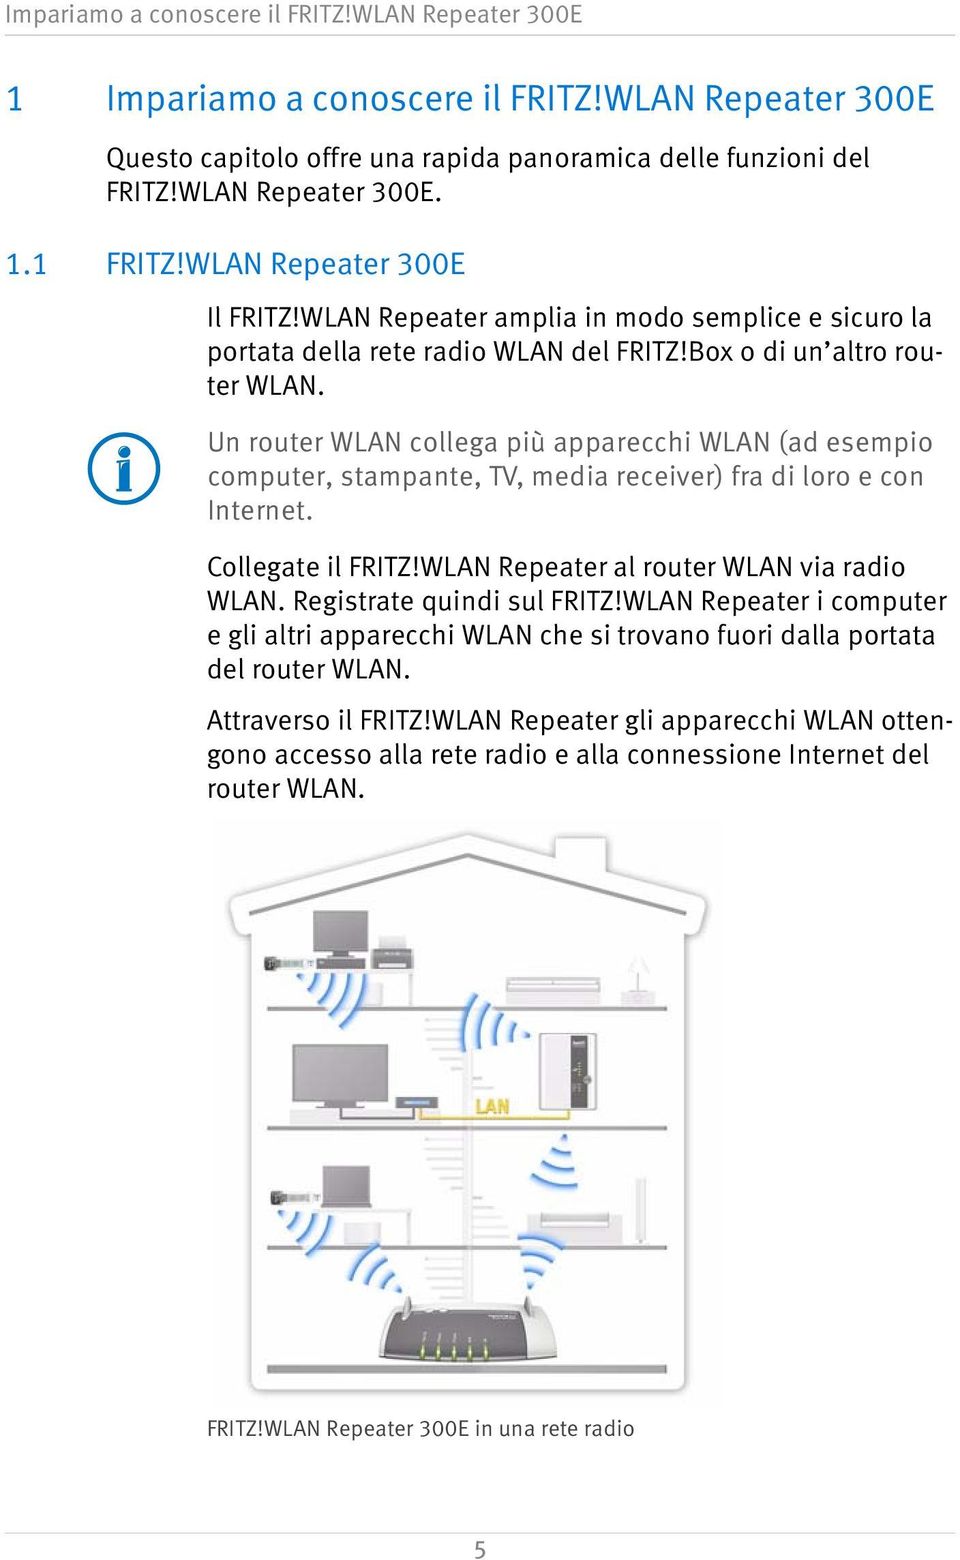 Un router WLAN collega più apparecchi WLAN (ad esempio computer, stampante, TV, media receiver) fra di loro e con Internet. Collegate il FRITZ!WLAN Repeater al router WLAN via radio WLAN.